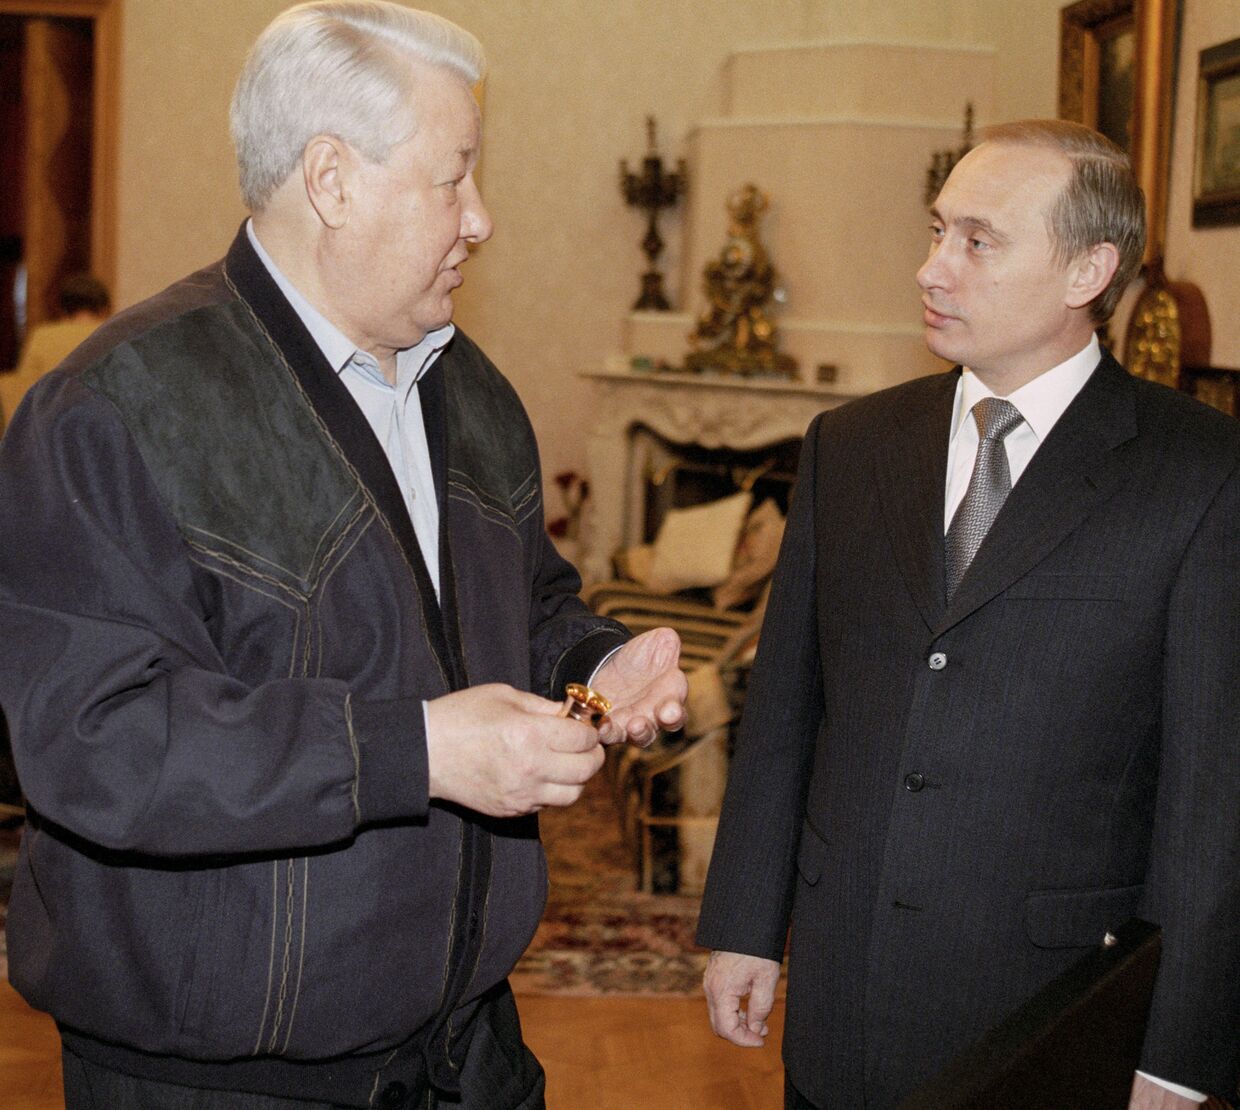 И.О. Президента РФ Владимир Путин поздравляет первого Президента России Бориса Ельцина с днем Рождения.